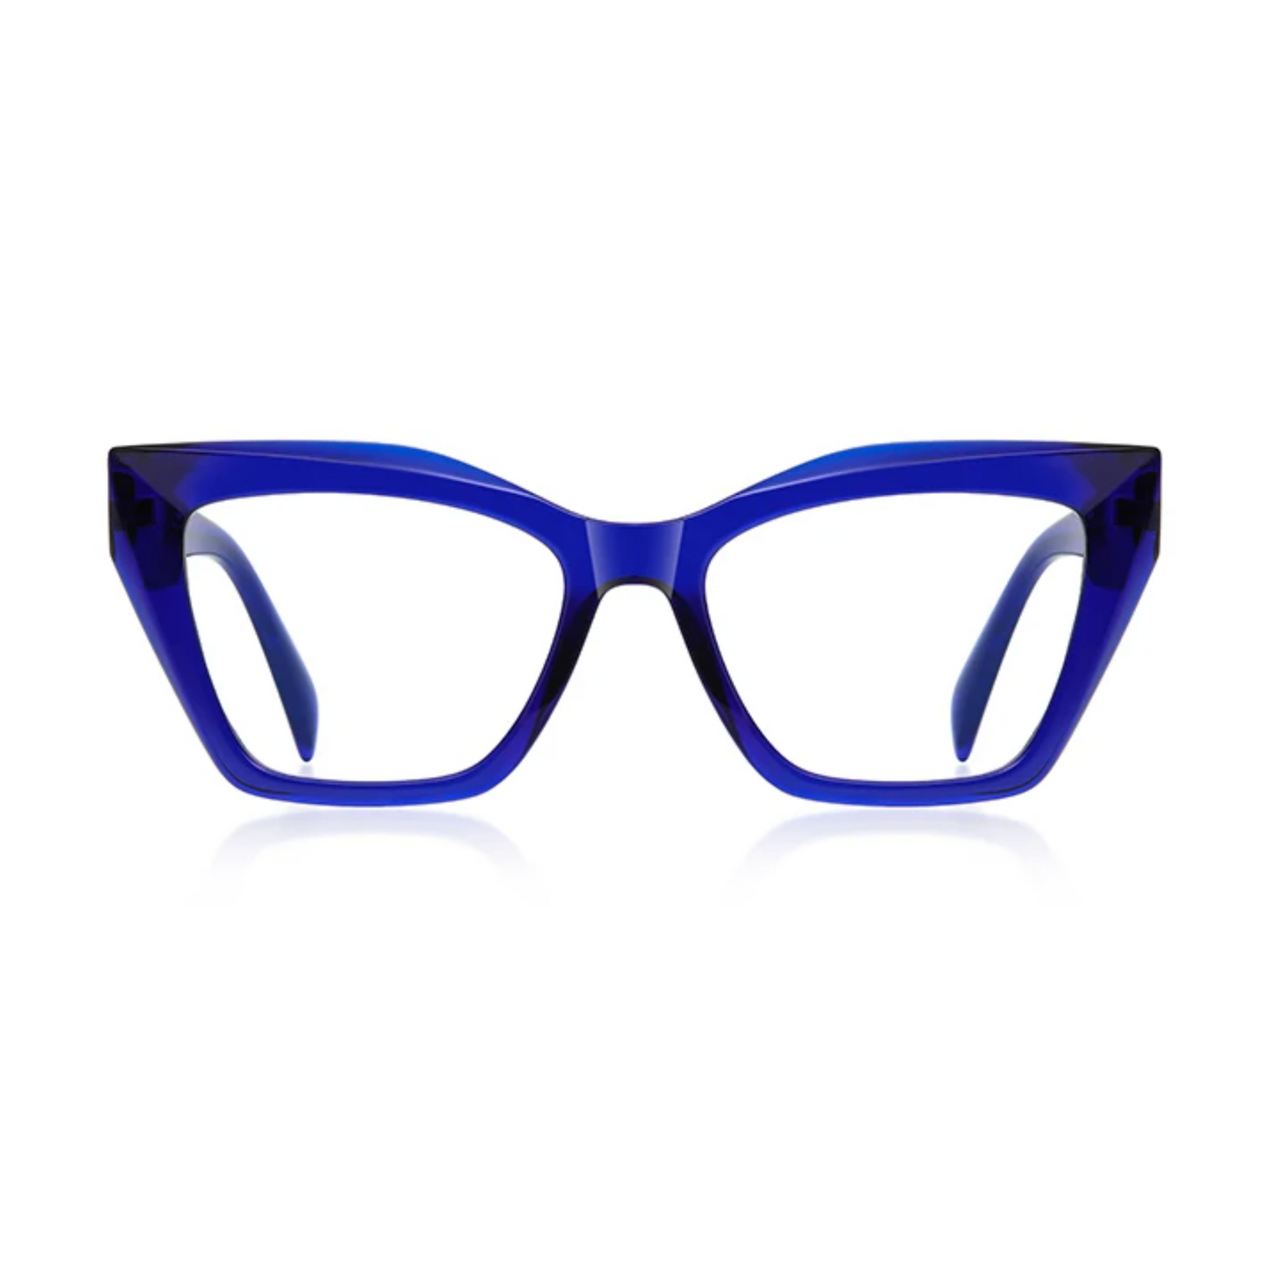 Caloundra Blue Light Glasses